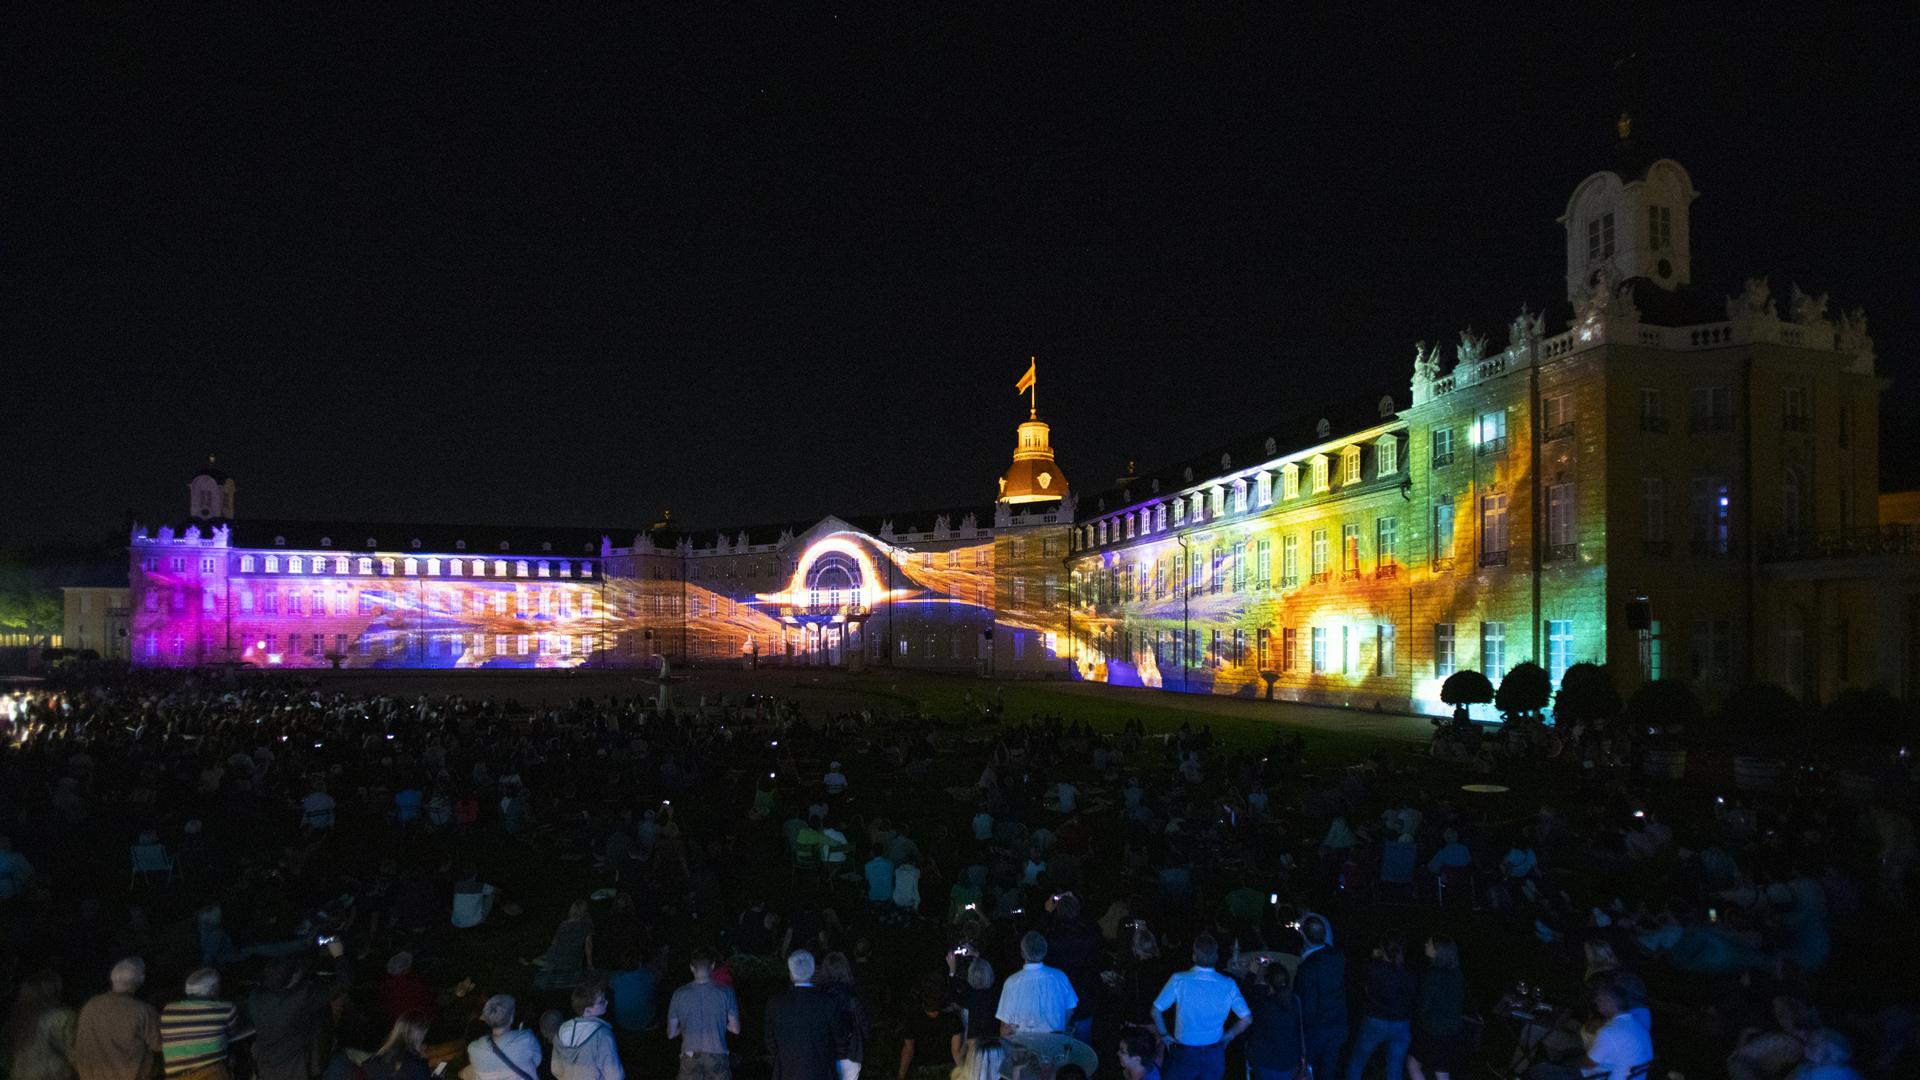 In den vergangenen Jahren strömten regelmäßig tausende von Besuchern vor das Schloss, um den spektakulären Illuminationen beizuwohnen.